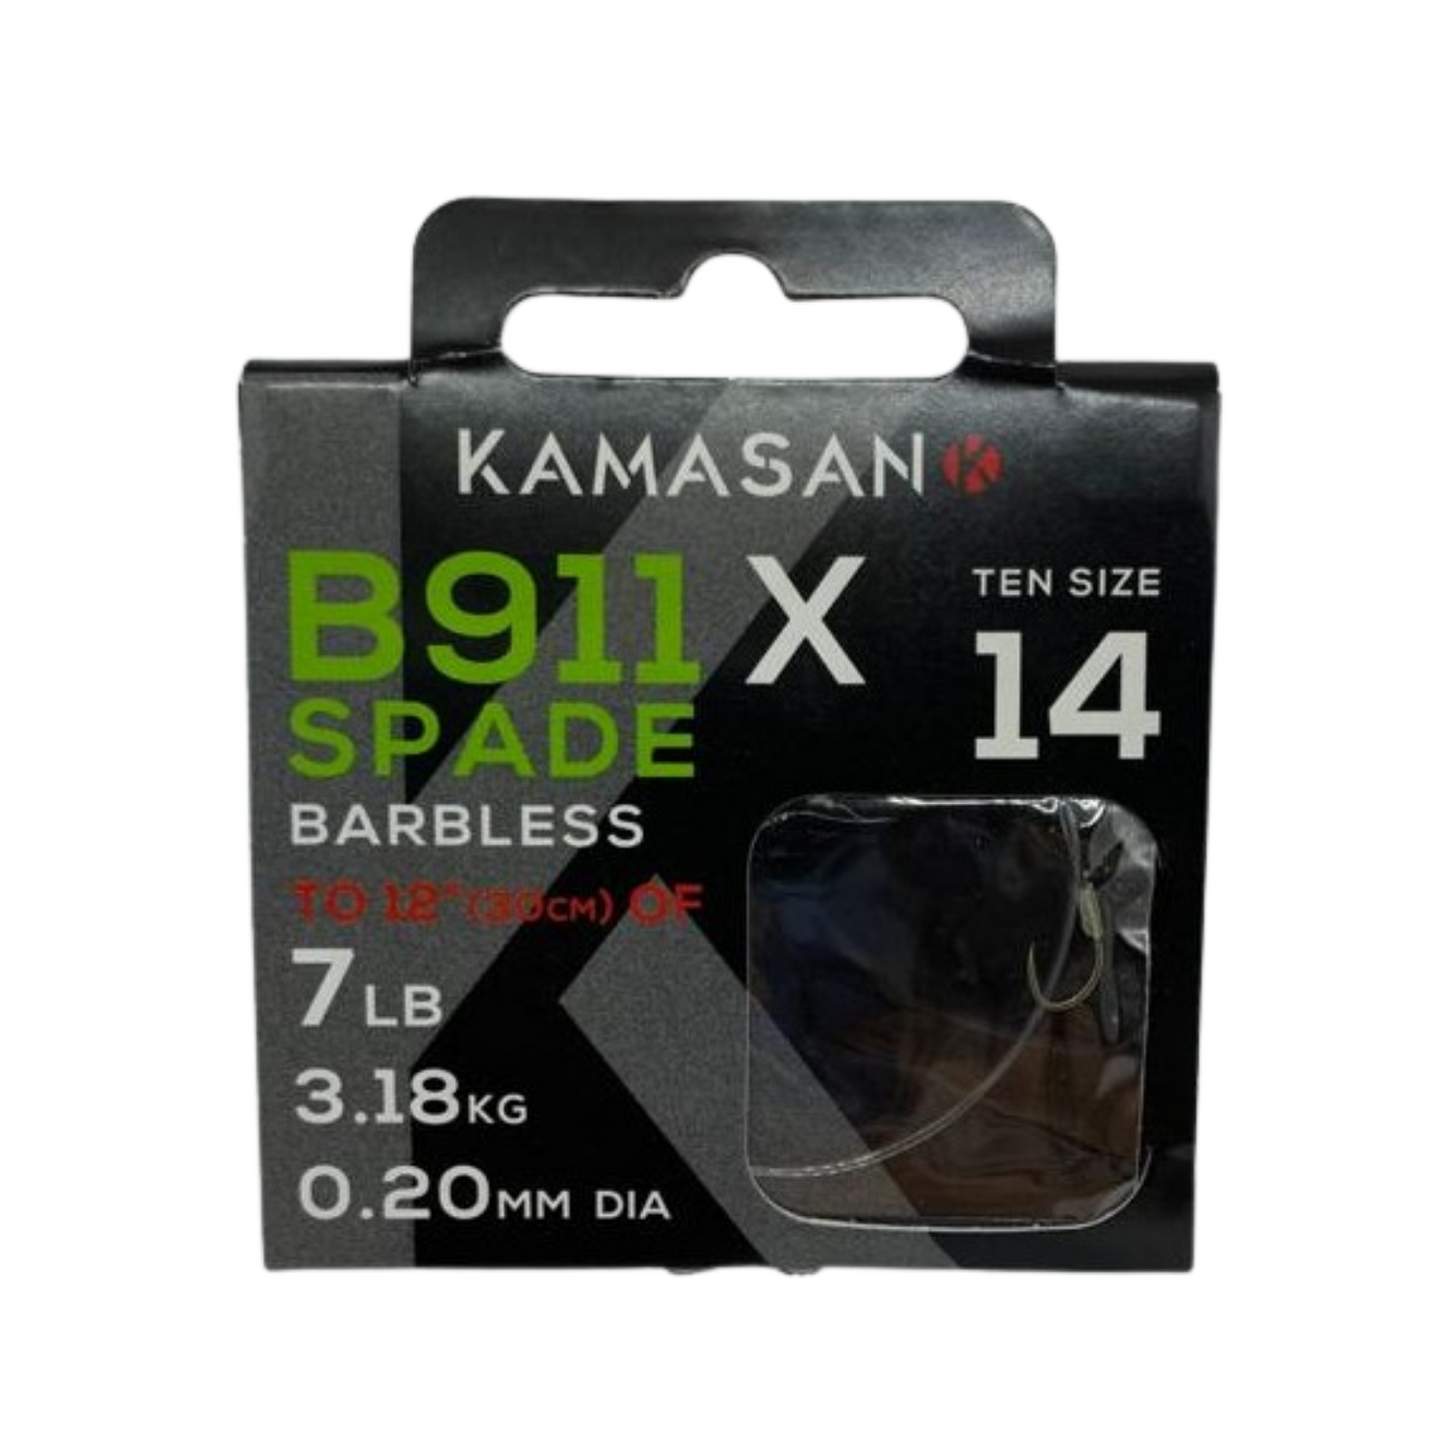 Kamasan B911XS Hooks To Nylon.